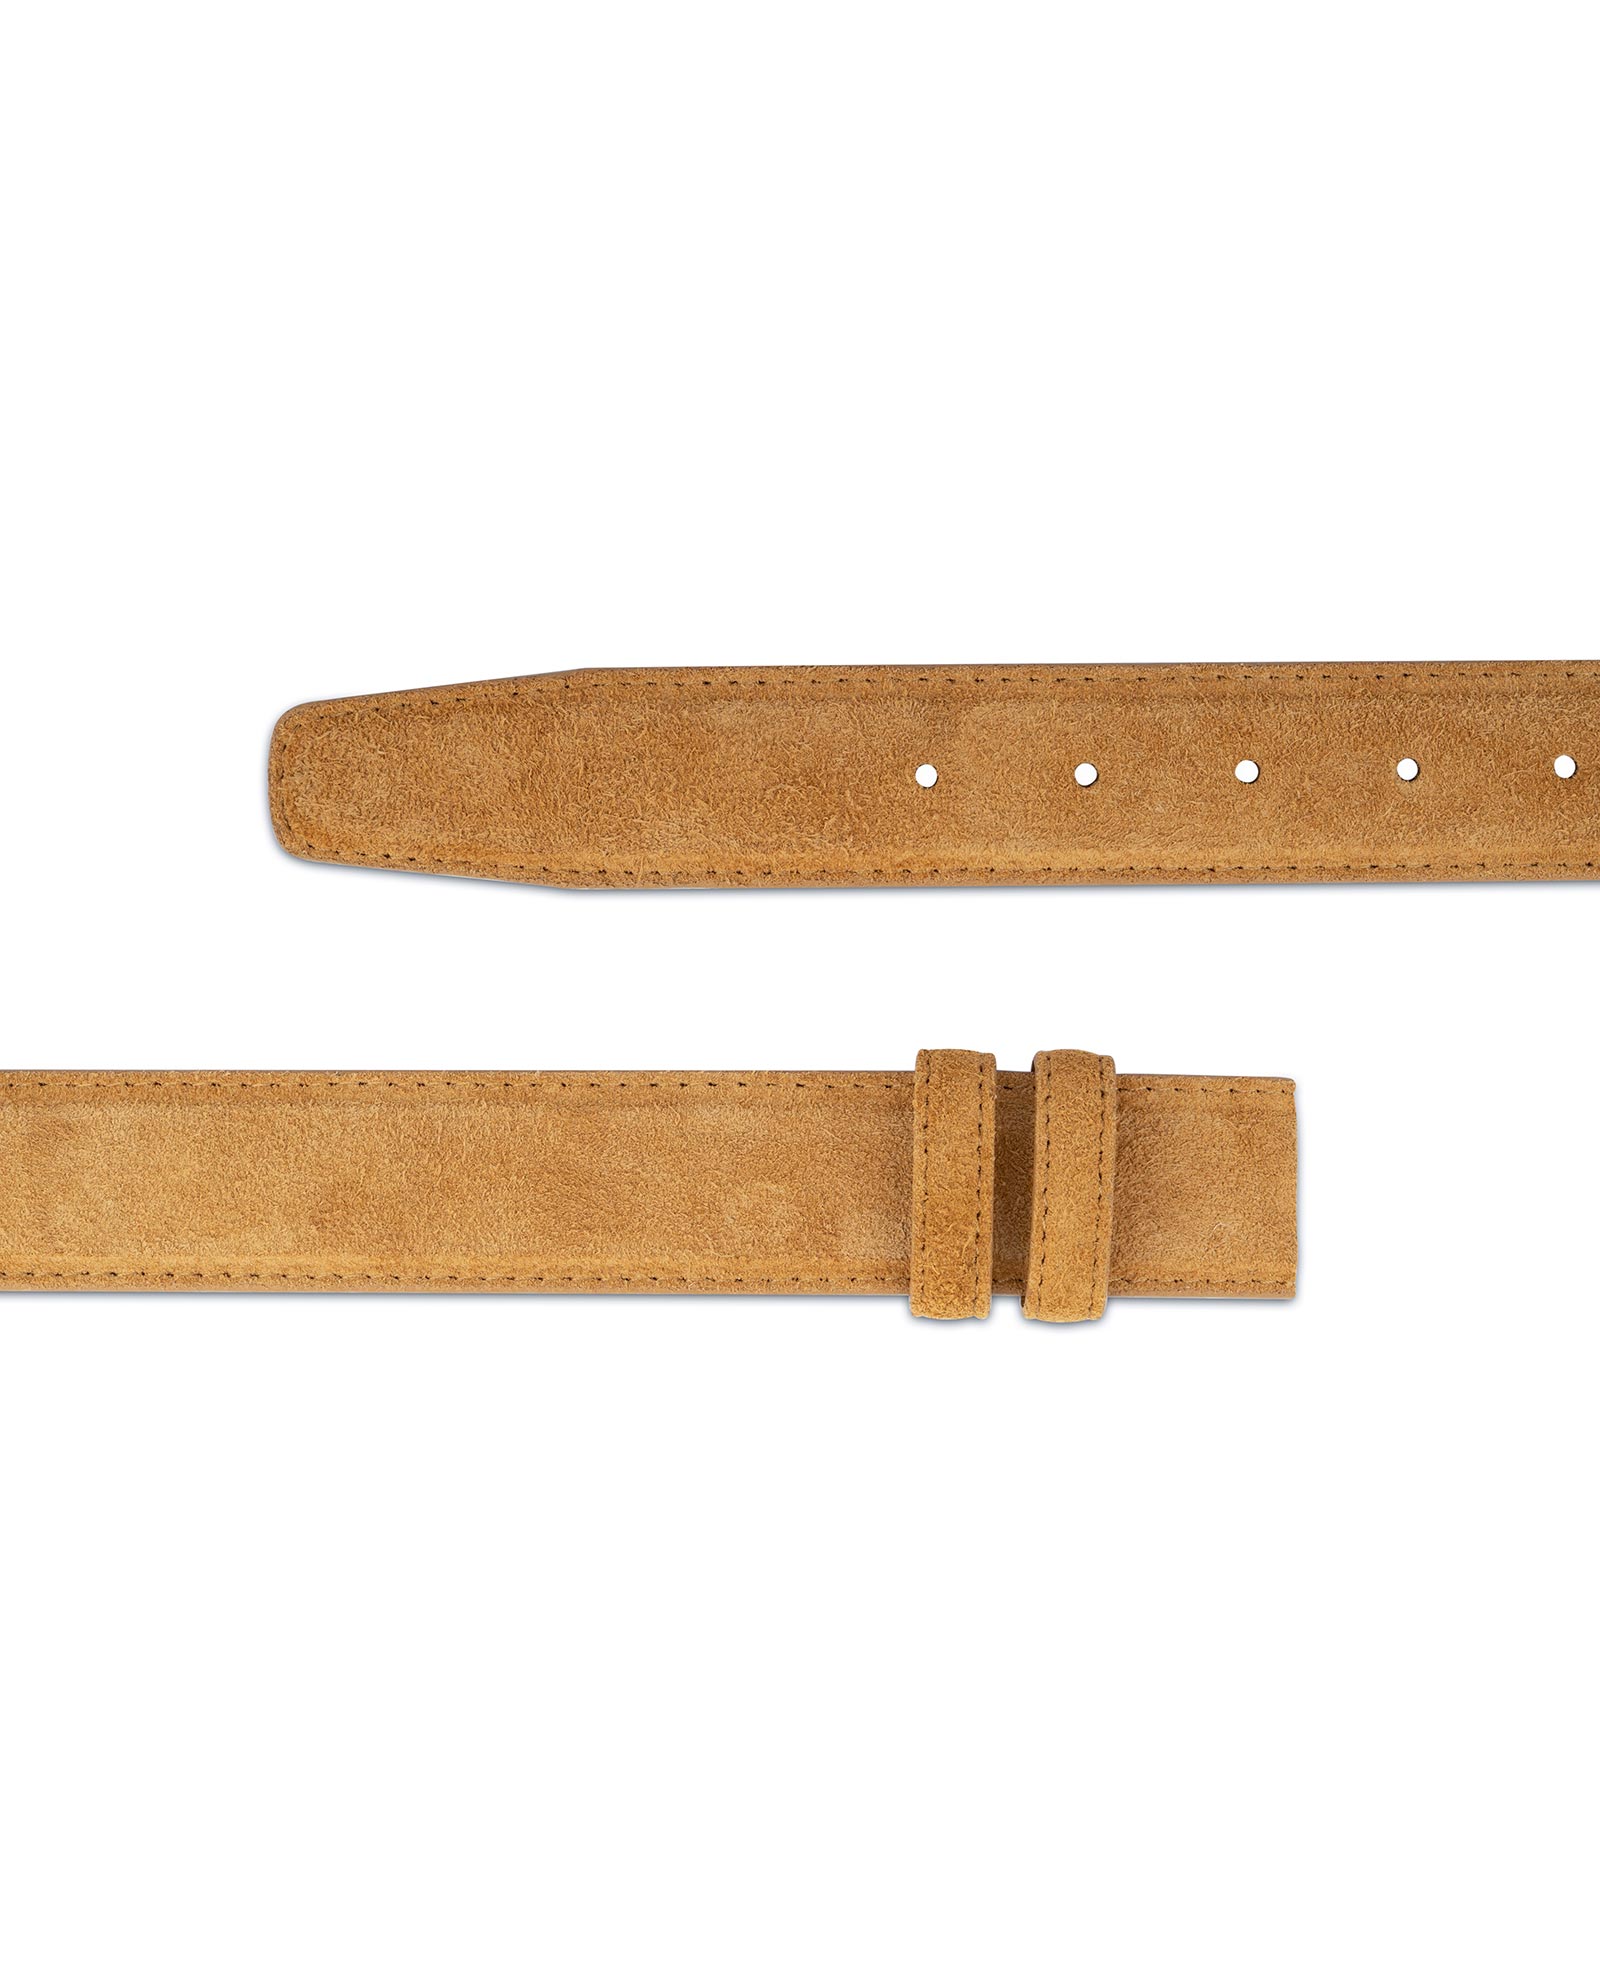 Buy Camel Color Belt Strap 35 mm | Adjustable | LeatherBeltsOnline.com